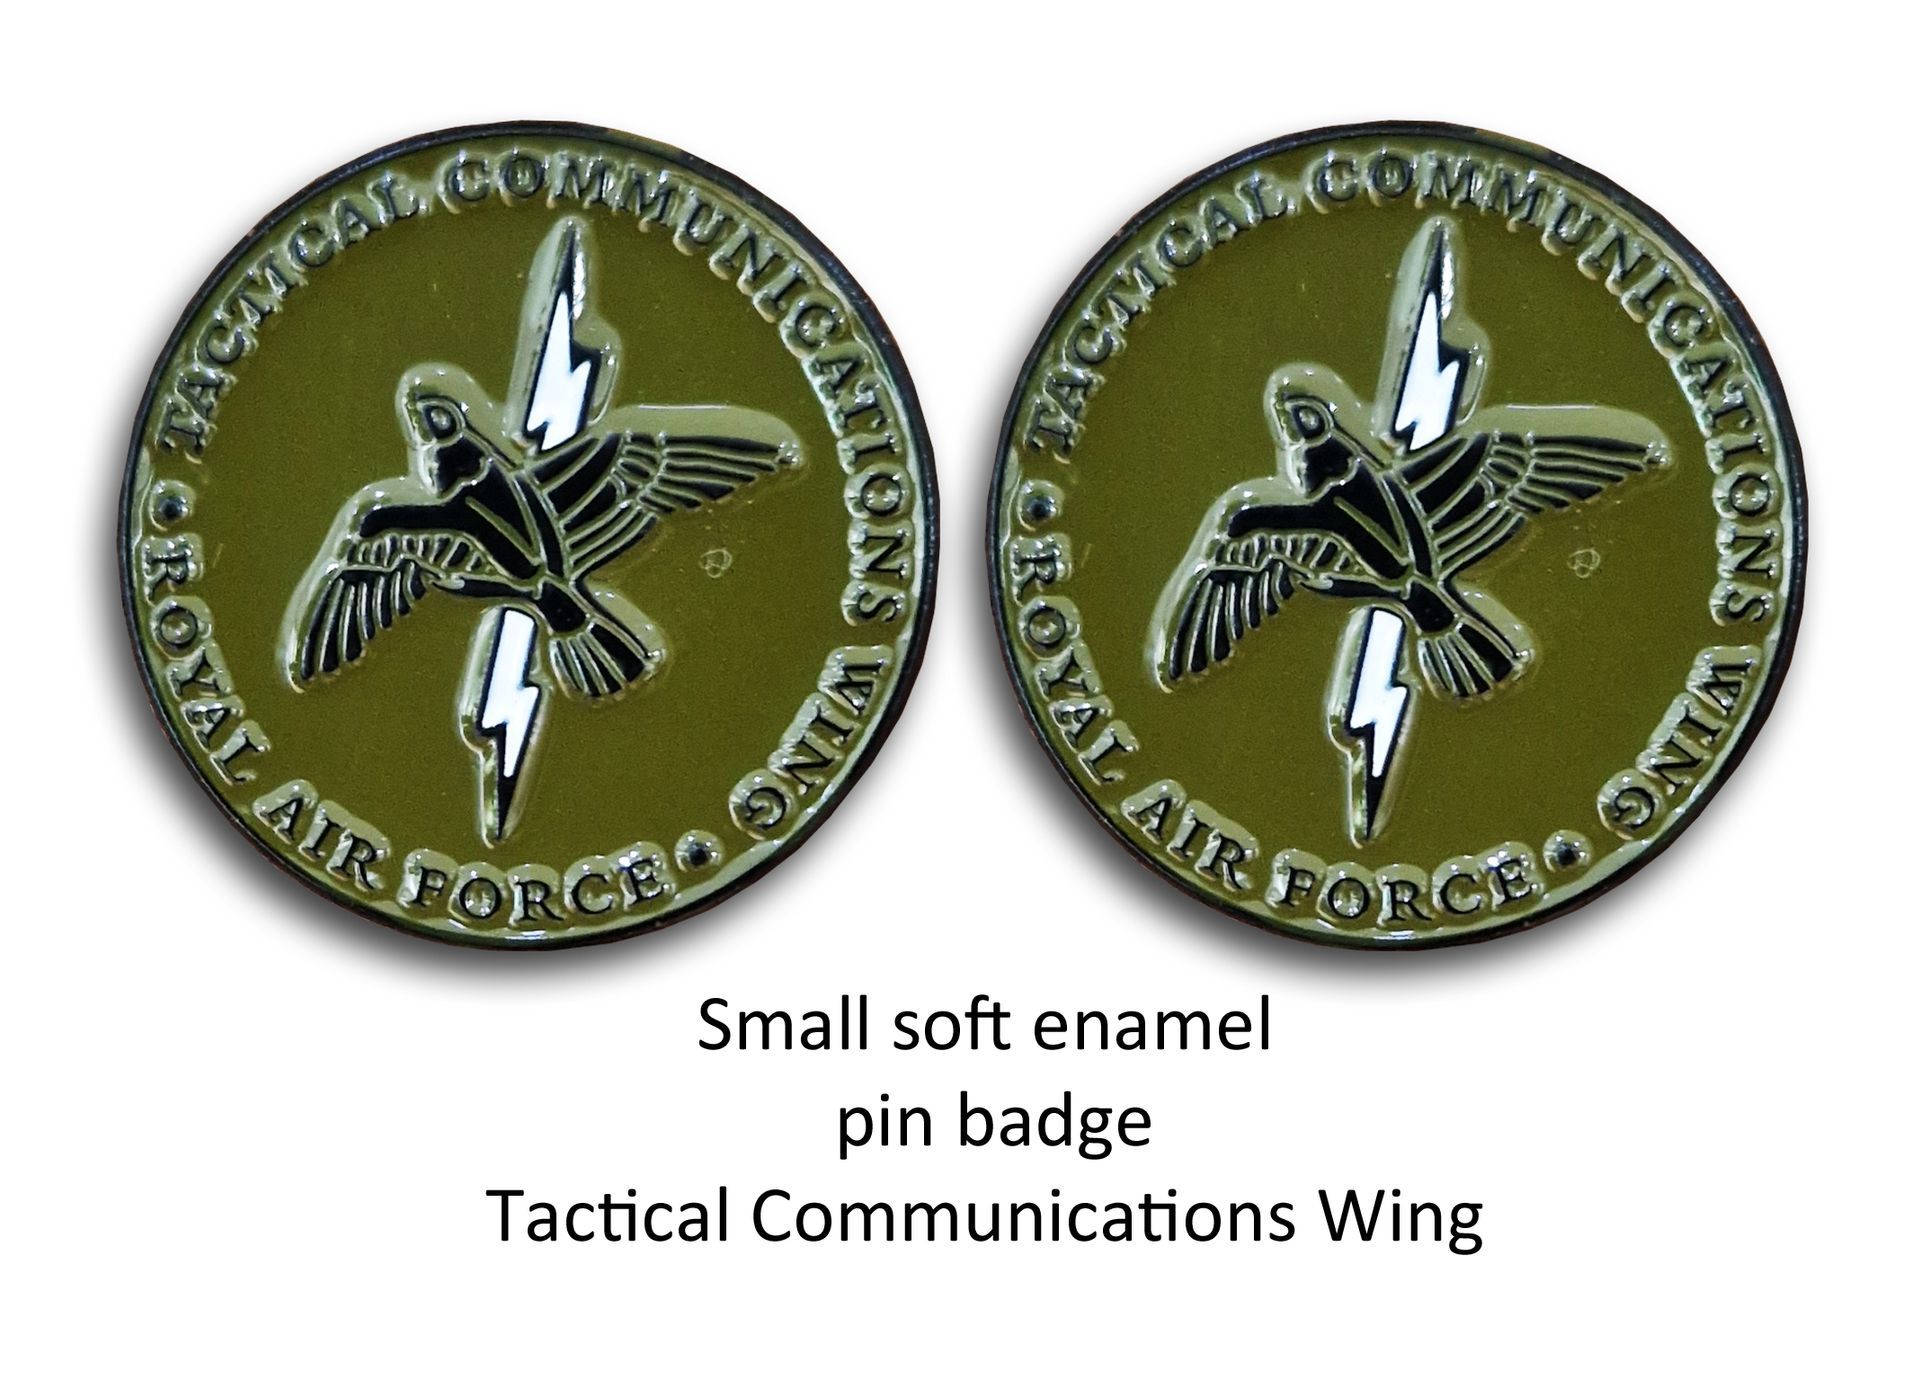 signals pin badges